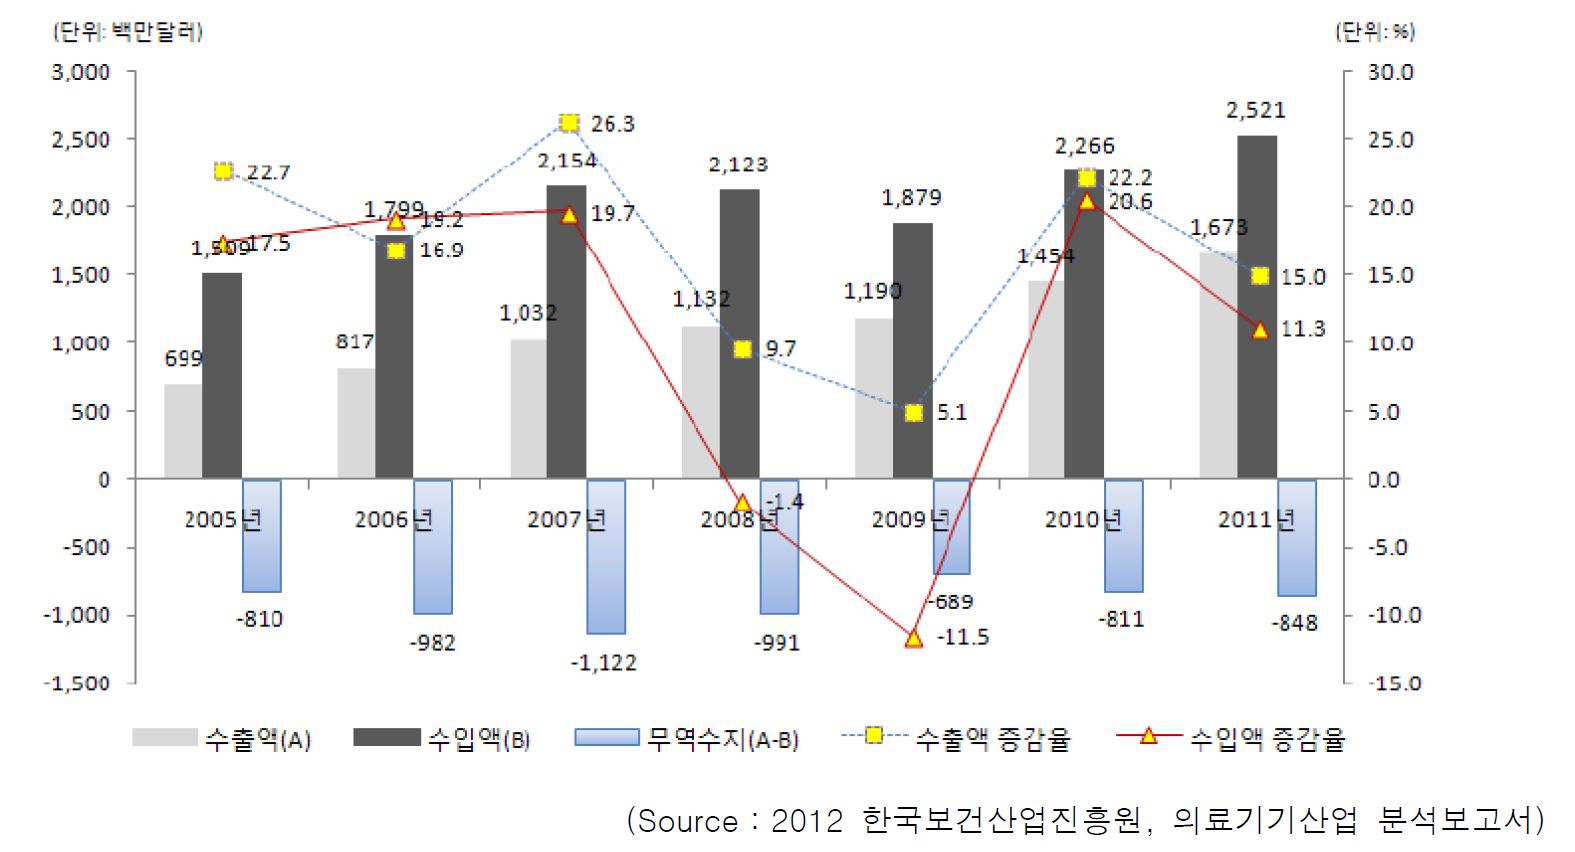 그림 60 국내 골질환 관련 임플란트 수출입현황(2011)